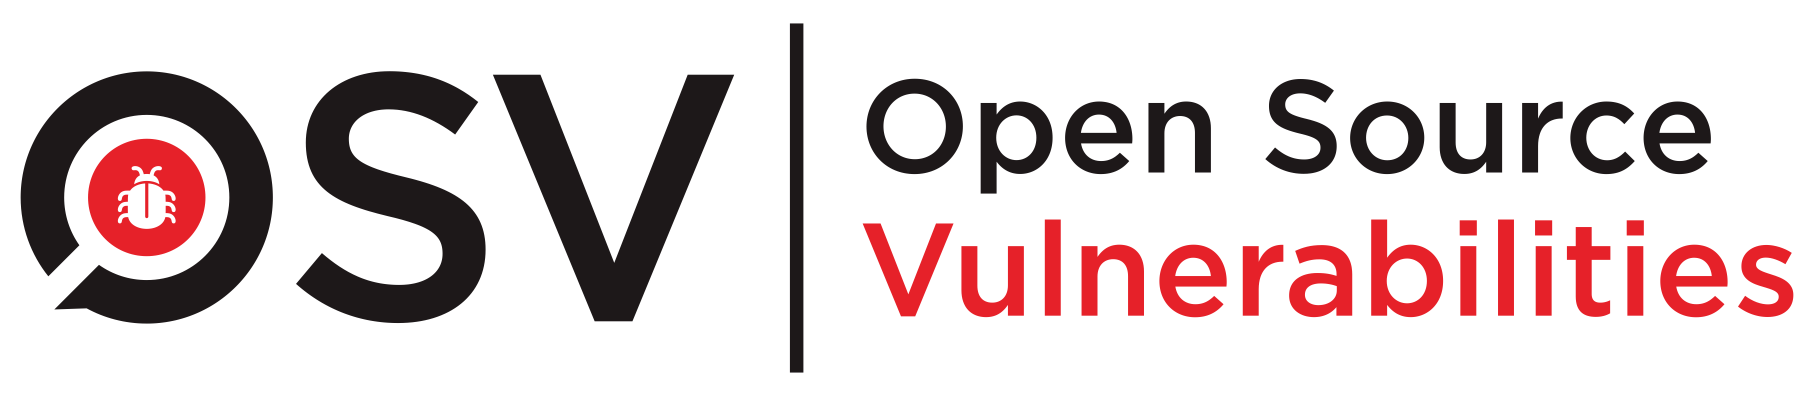 OSV Scanner Logo